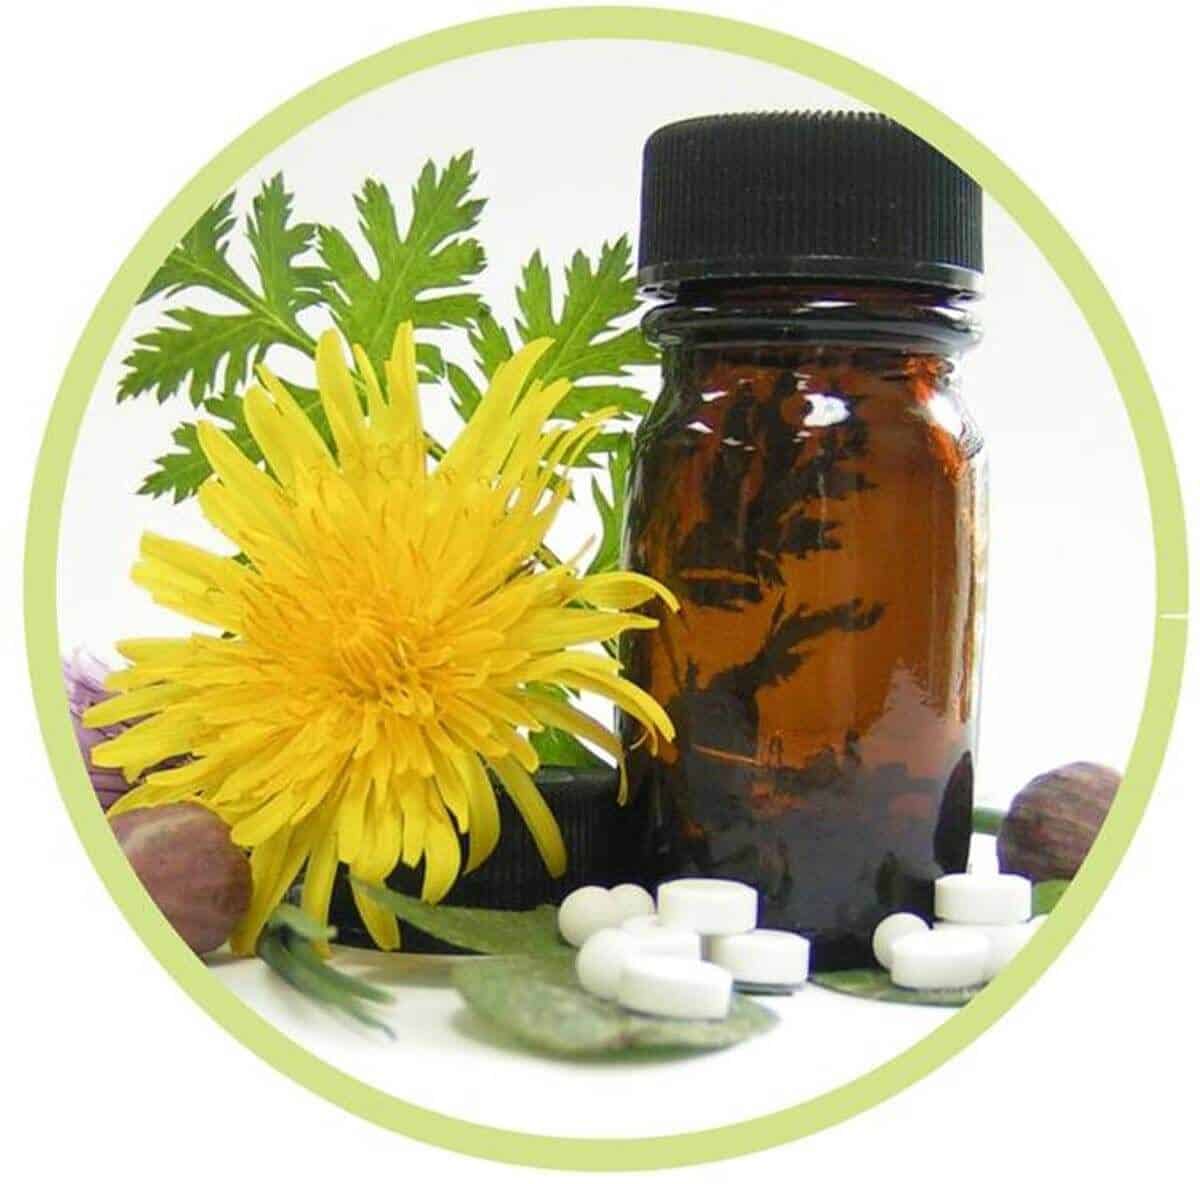 La homeopatía parte de tratamientos individualizados para contrarrestar ciertos padecimientos